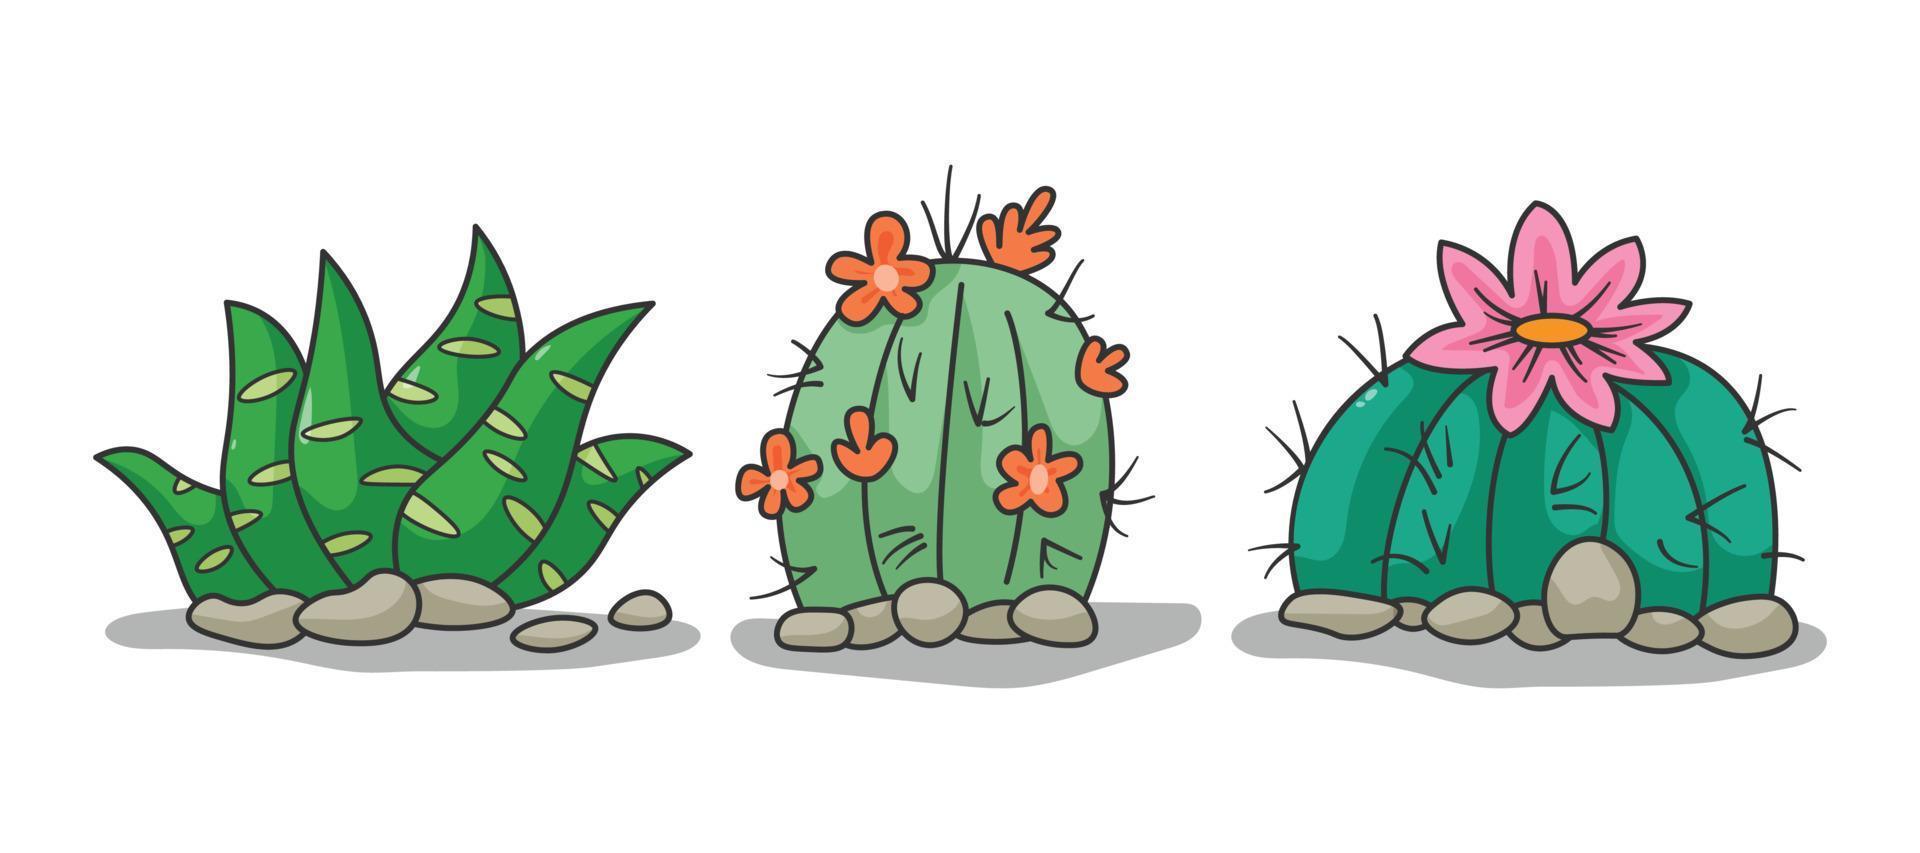 sammlungssatzillustrationsvektorgrafik des kaktus oder der kakteen im weißen hintergrund vektor